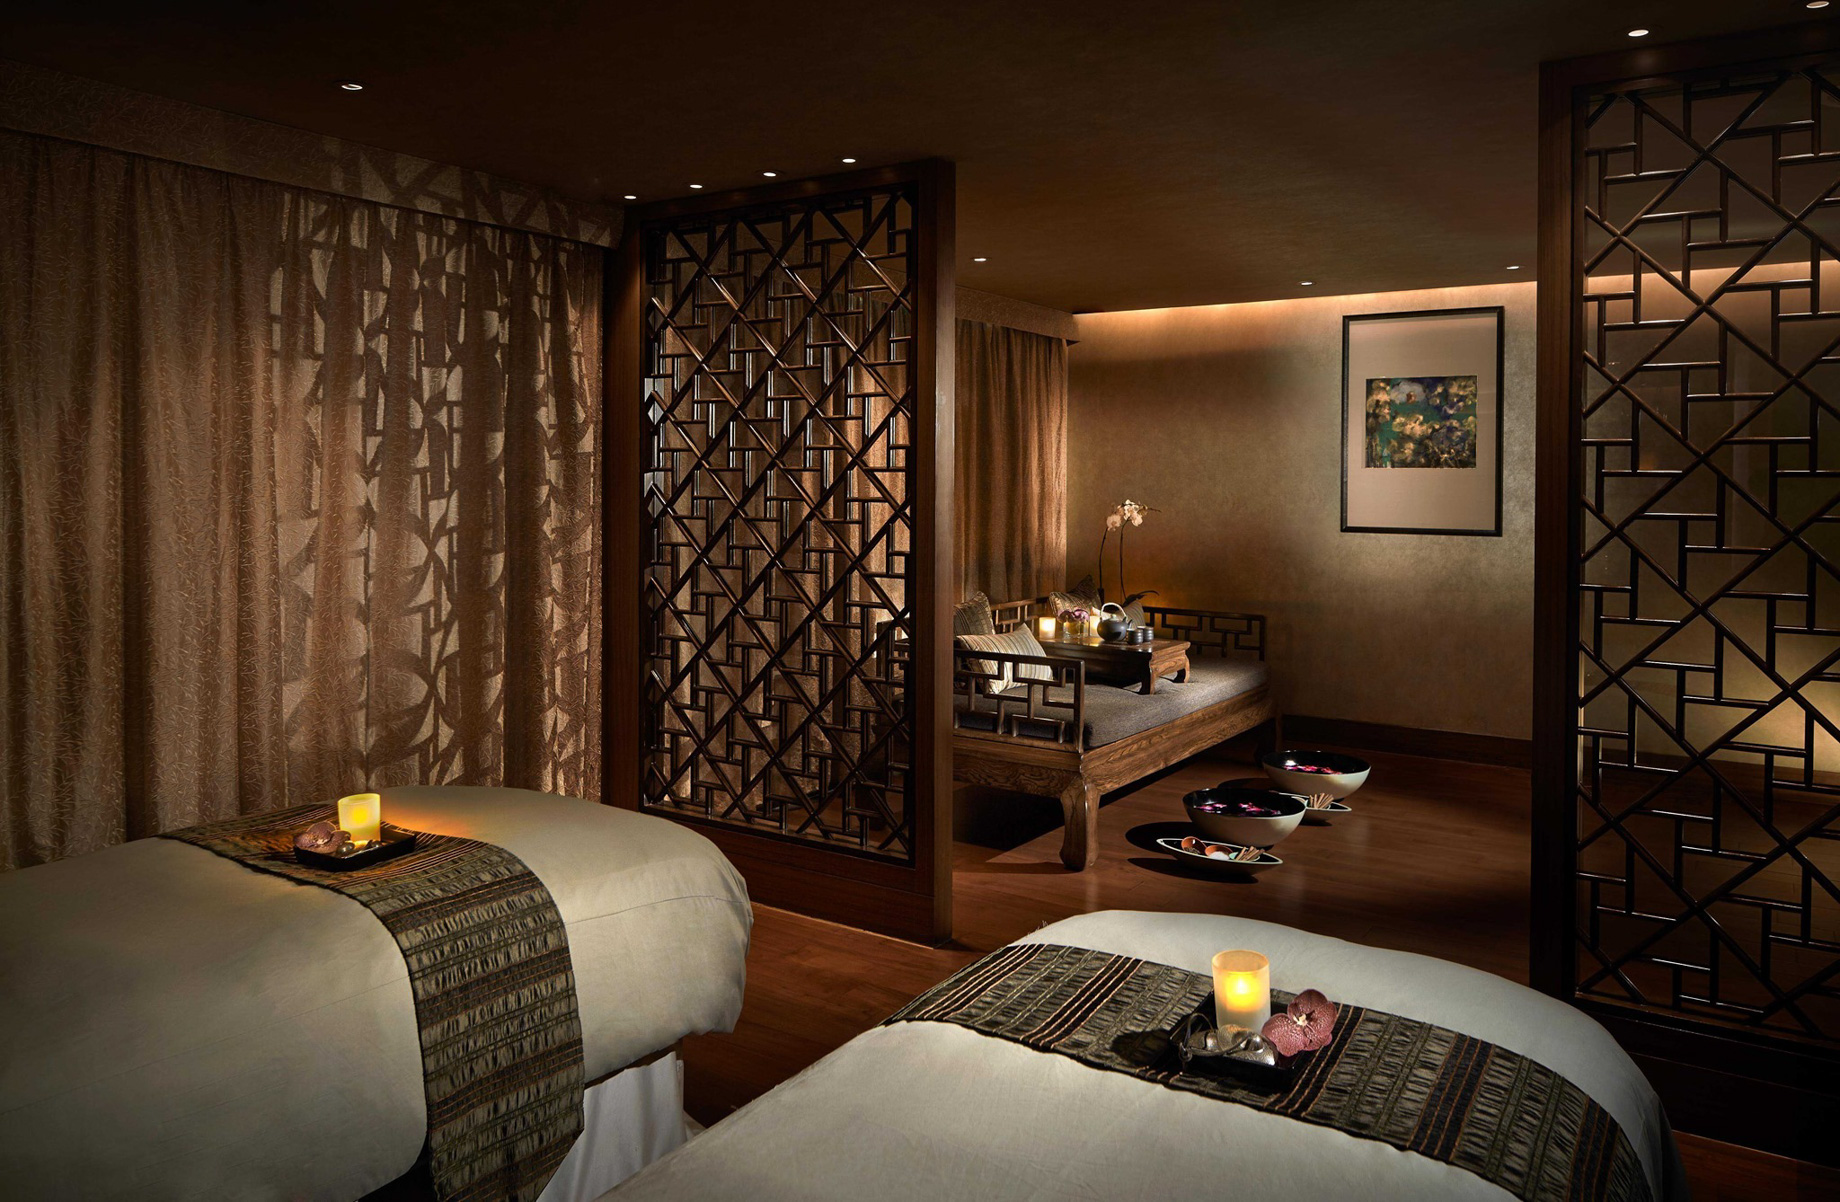 Mandarin Oriental, Hong Kong Hotel – Hong Kong, China – Spa Treatment Room